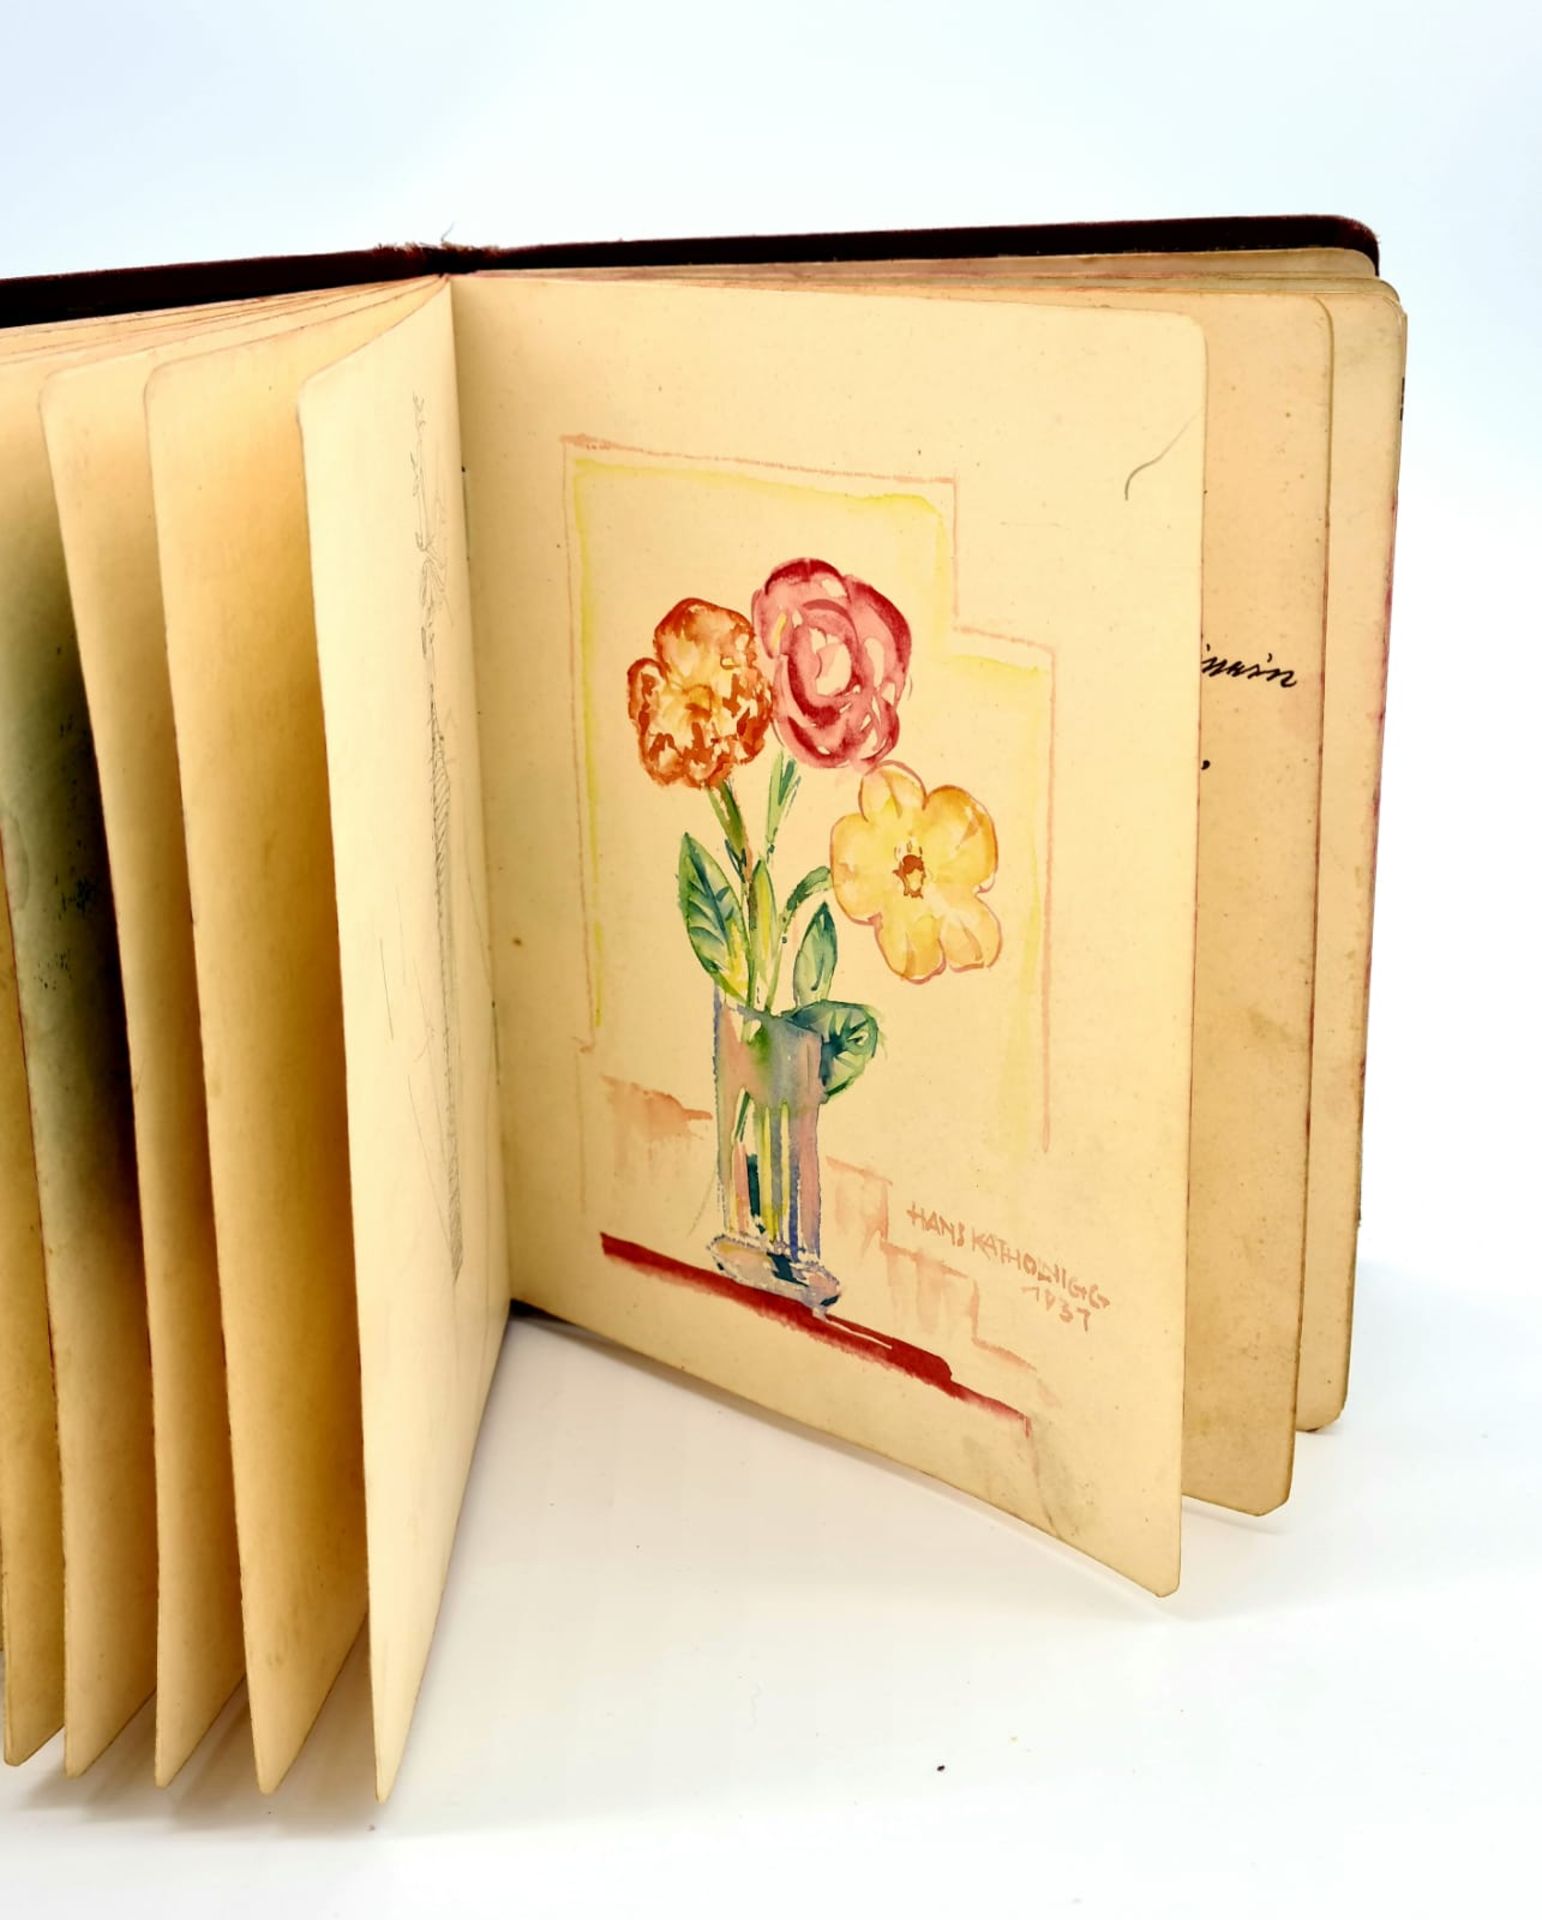 Poesiealbum aus den 1920er Jahren mit mehreren Aquarellen und Gedichten, Größe: ca. 17x14cm, - Image 4 of 4